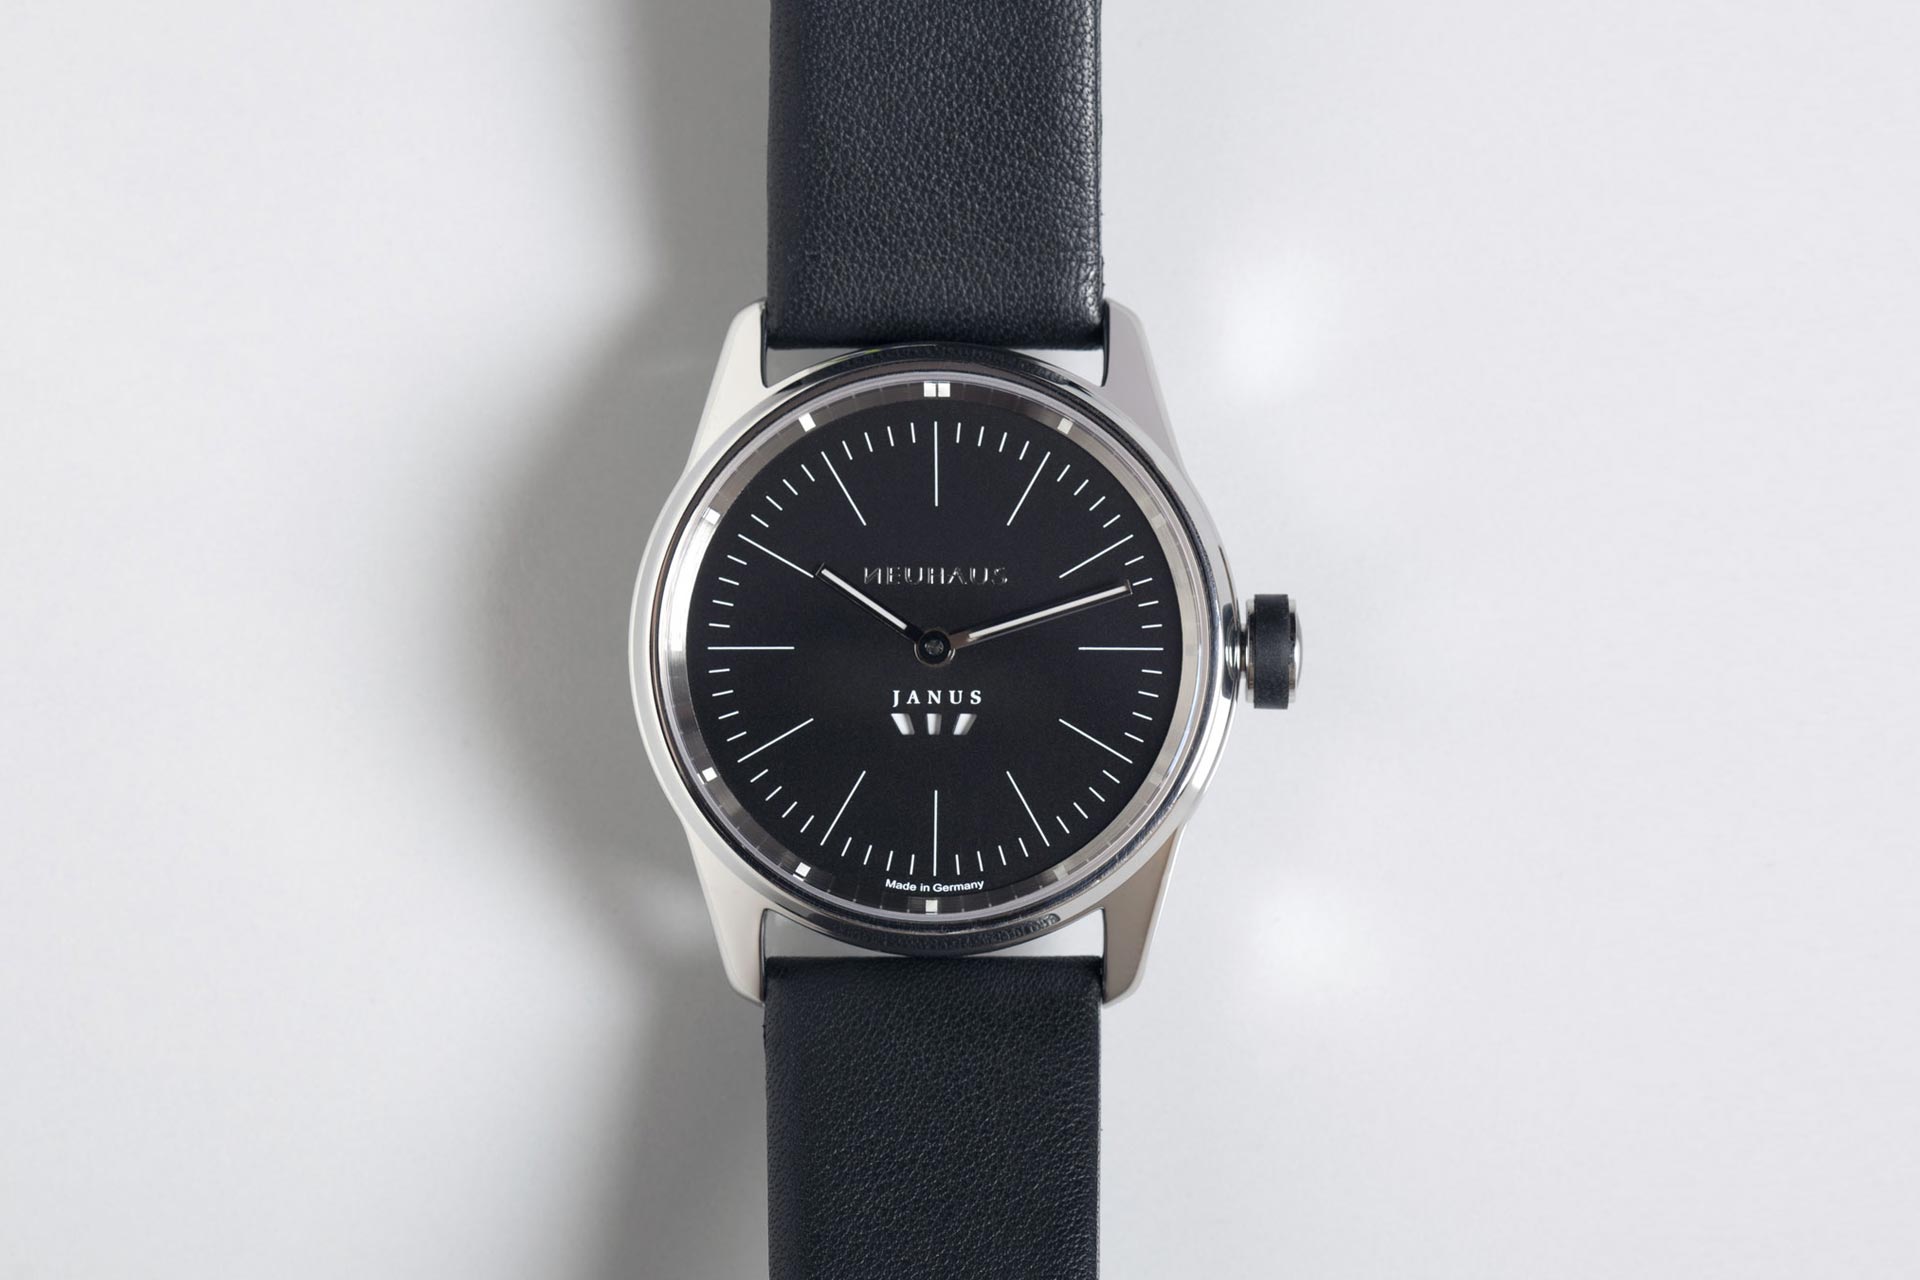 Zweizeigeruhr von NEUHAUS Timepieces, Modell JANUS minimal mobil top